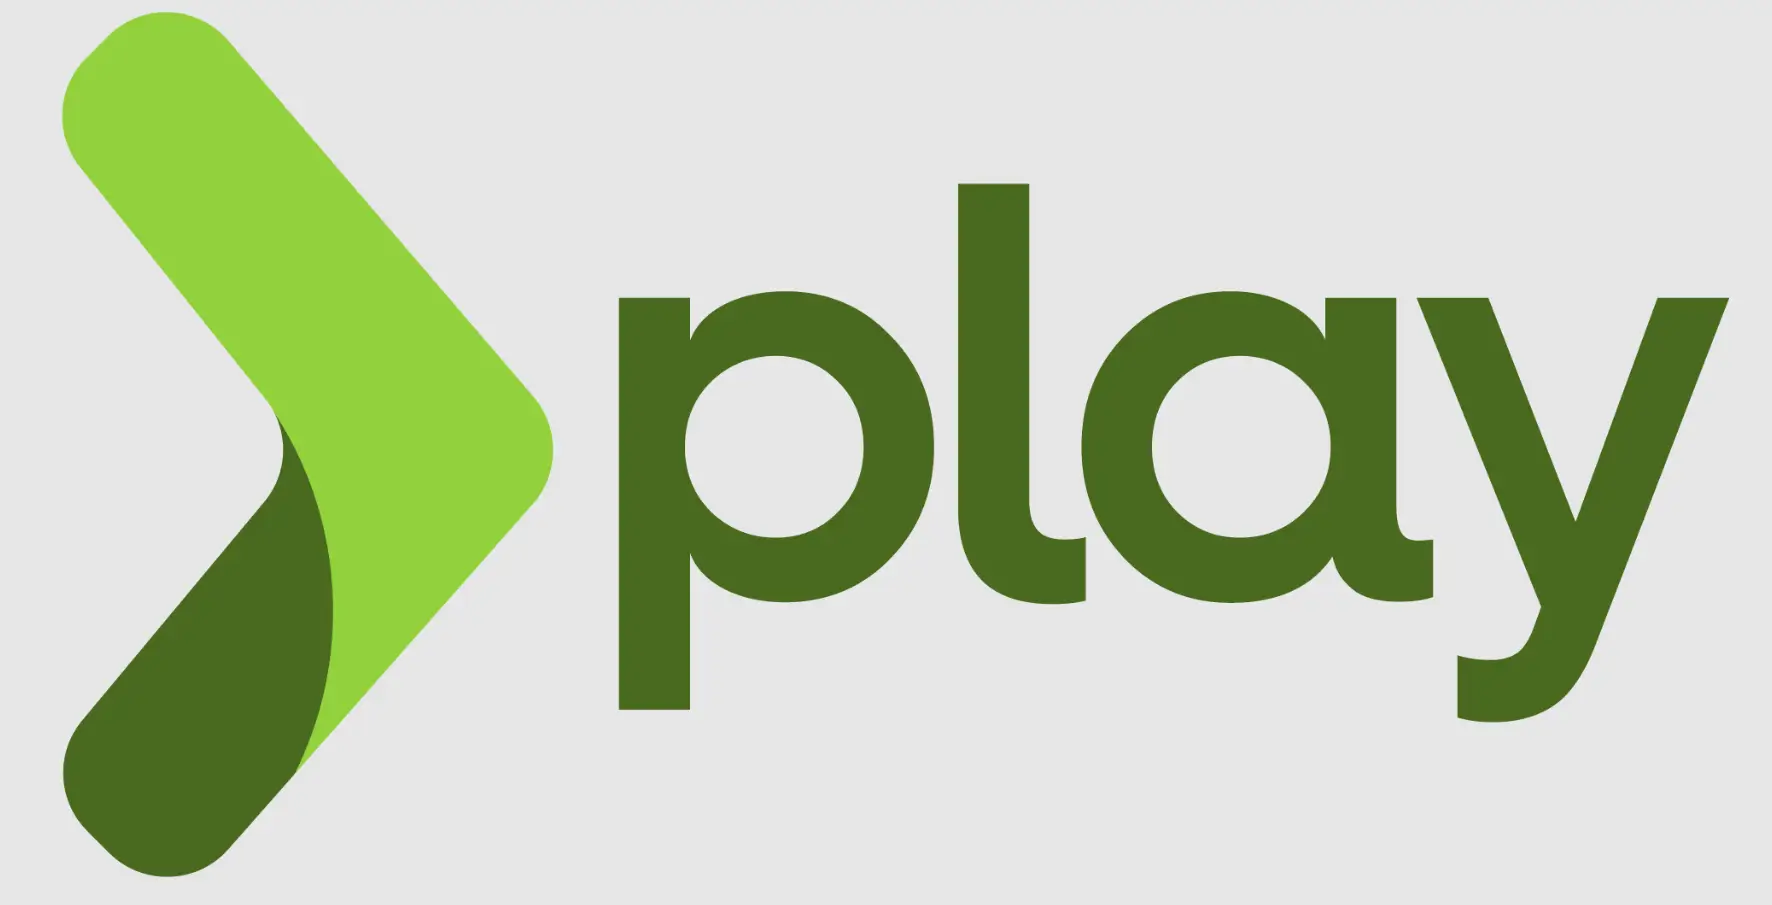 Image showing Play framework's logo.